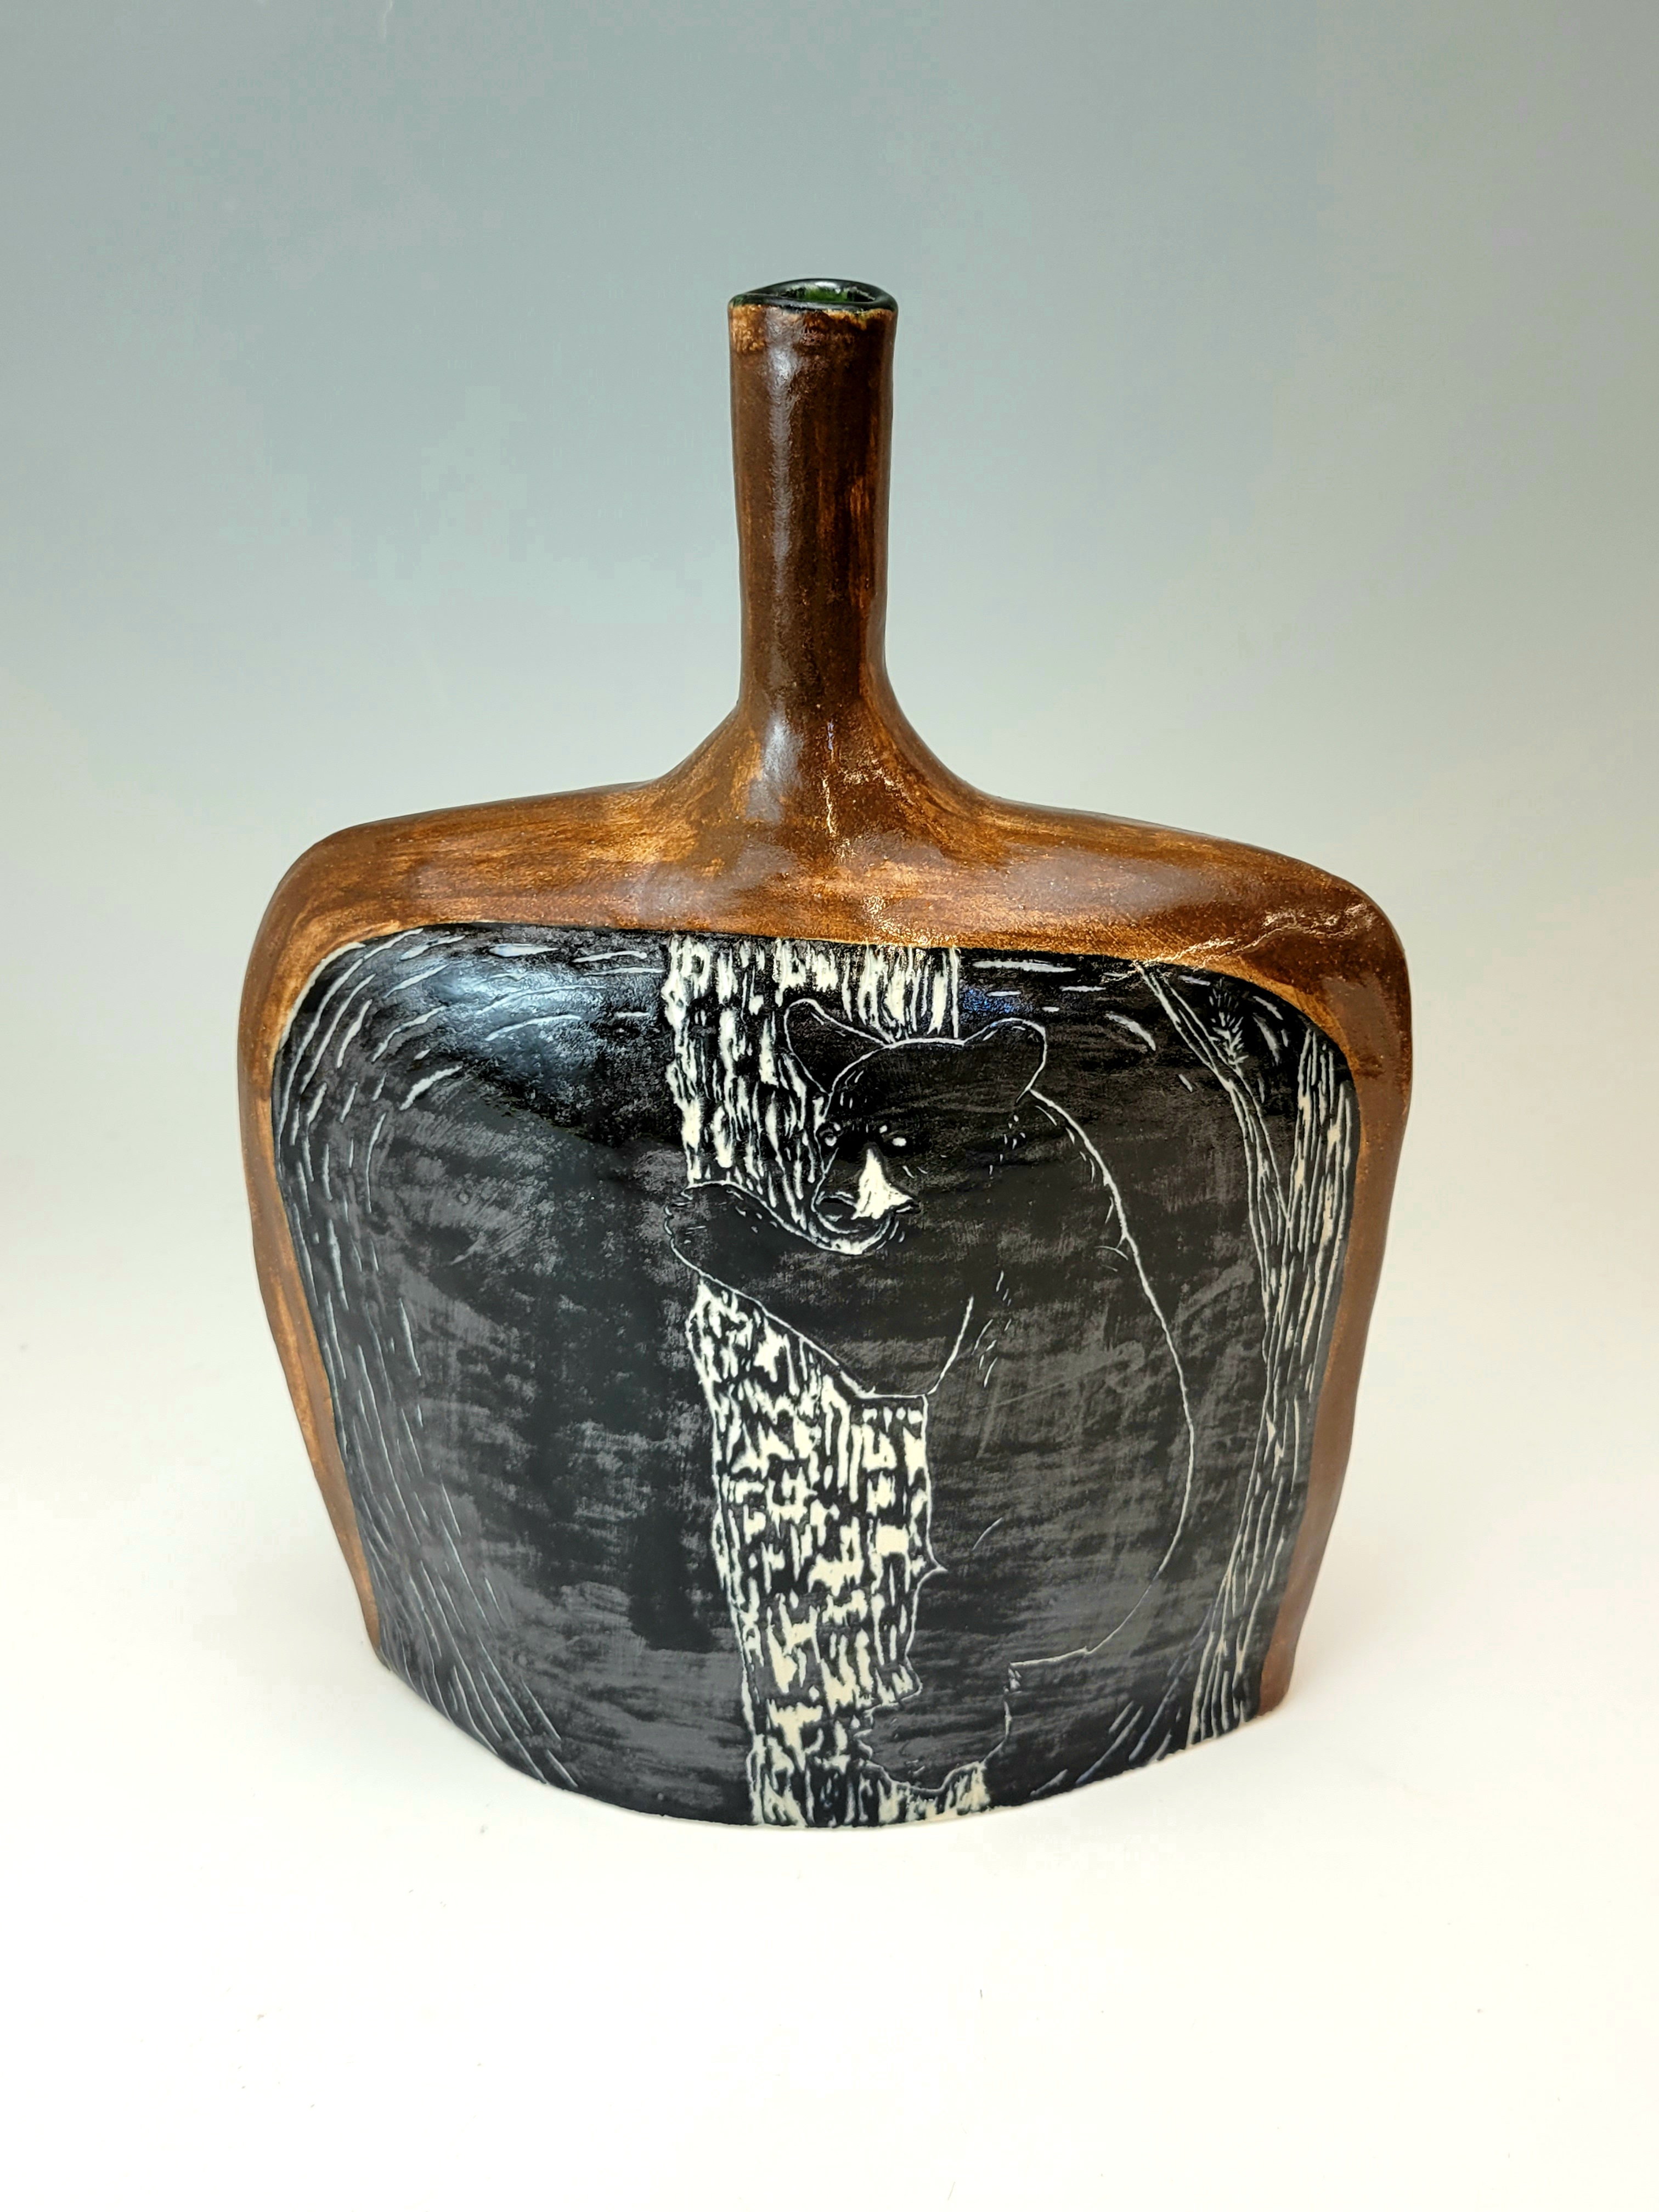 Image of the Black Bear ceramic vase sculpture back.